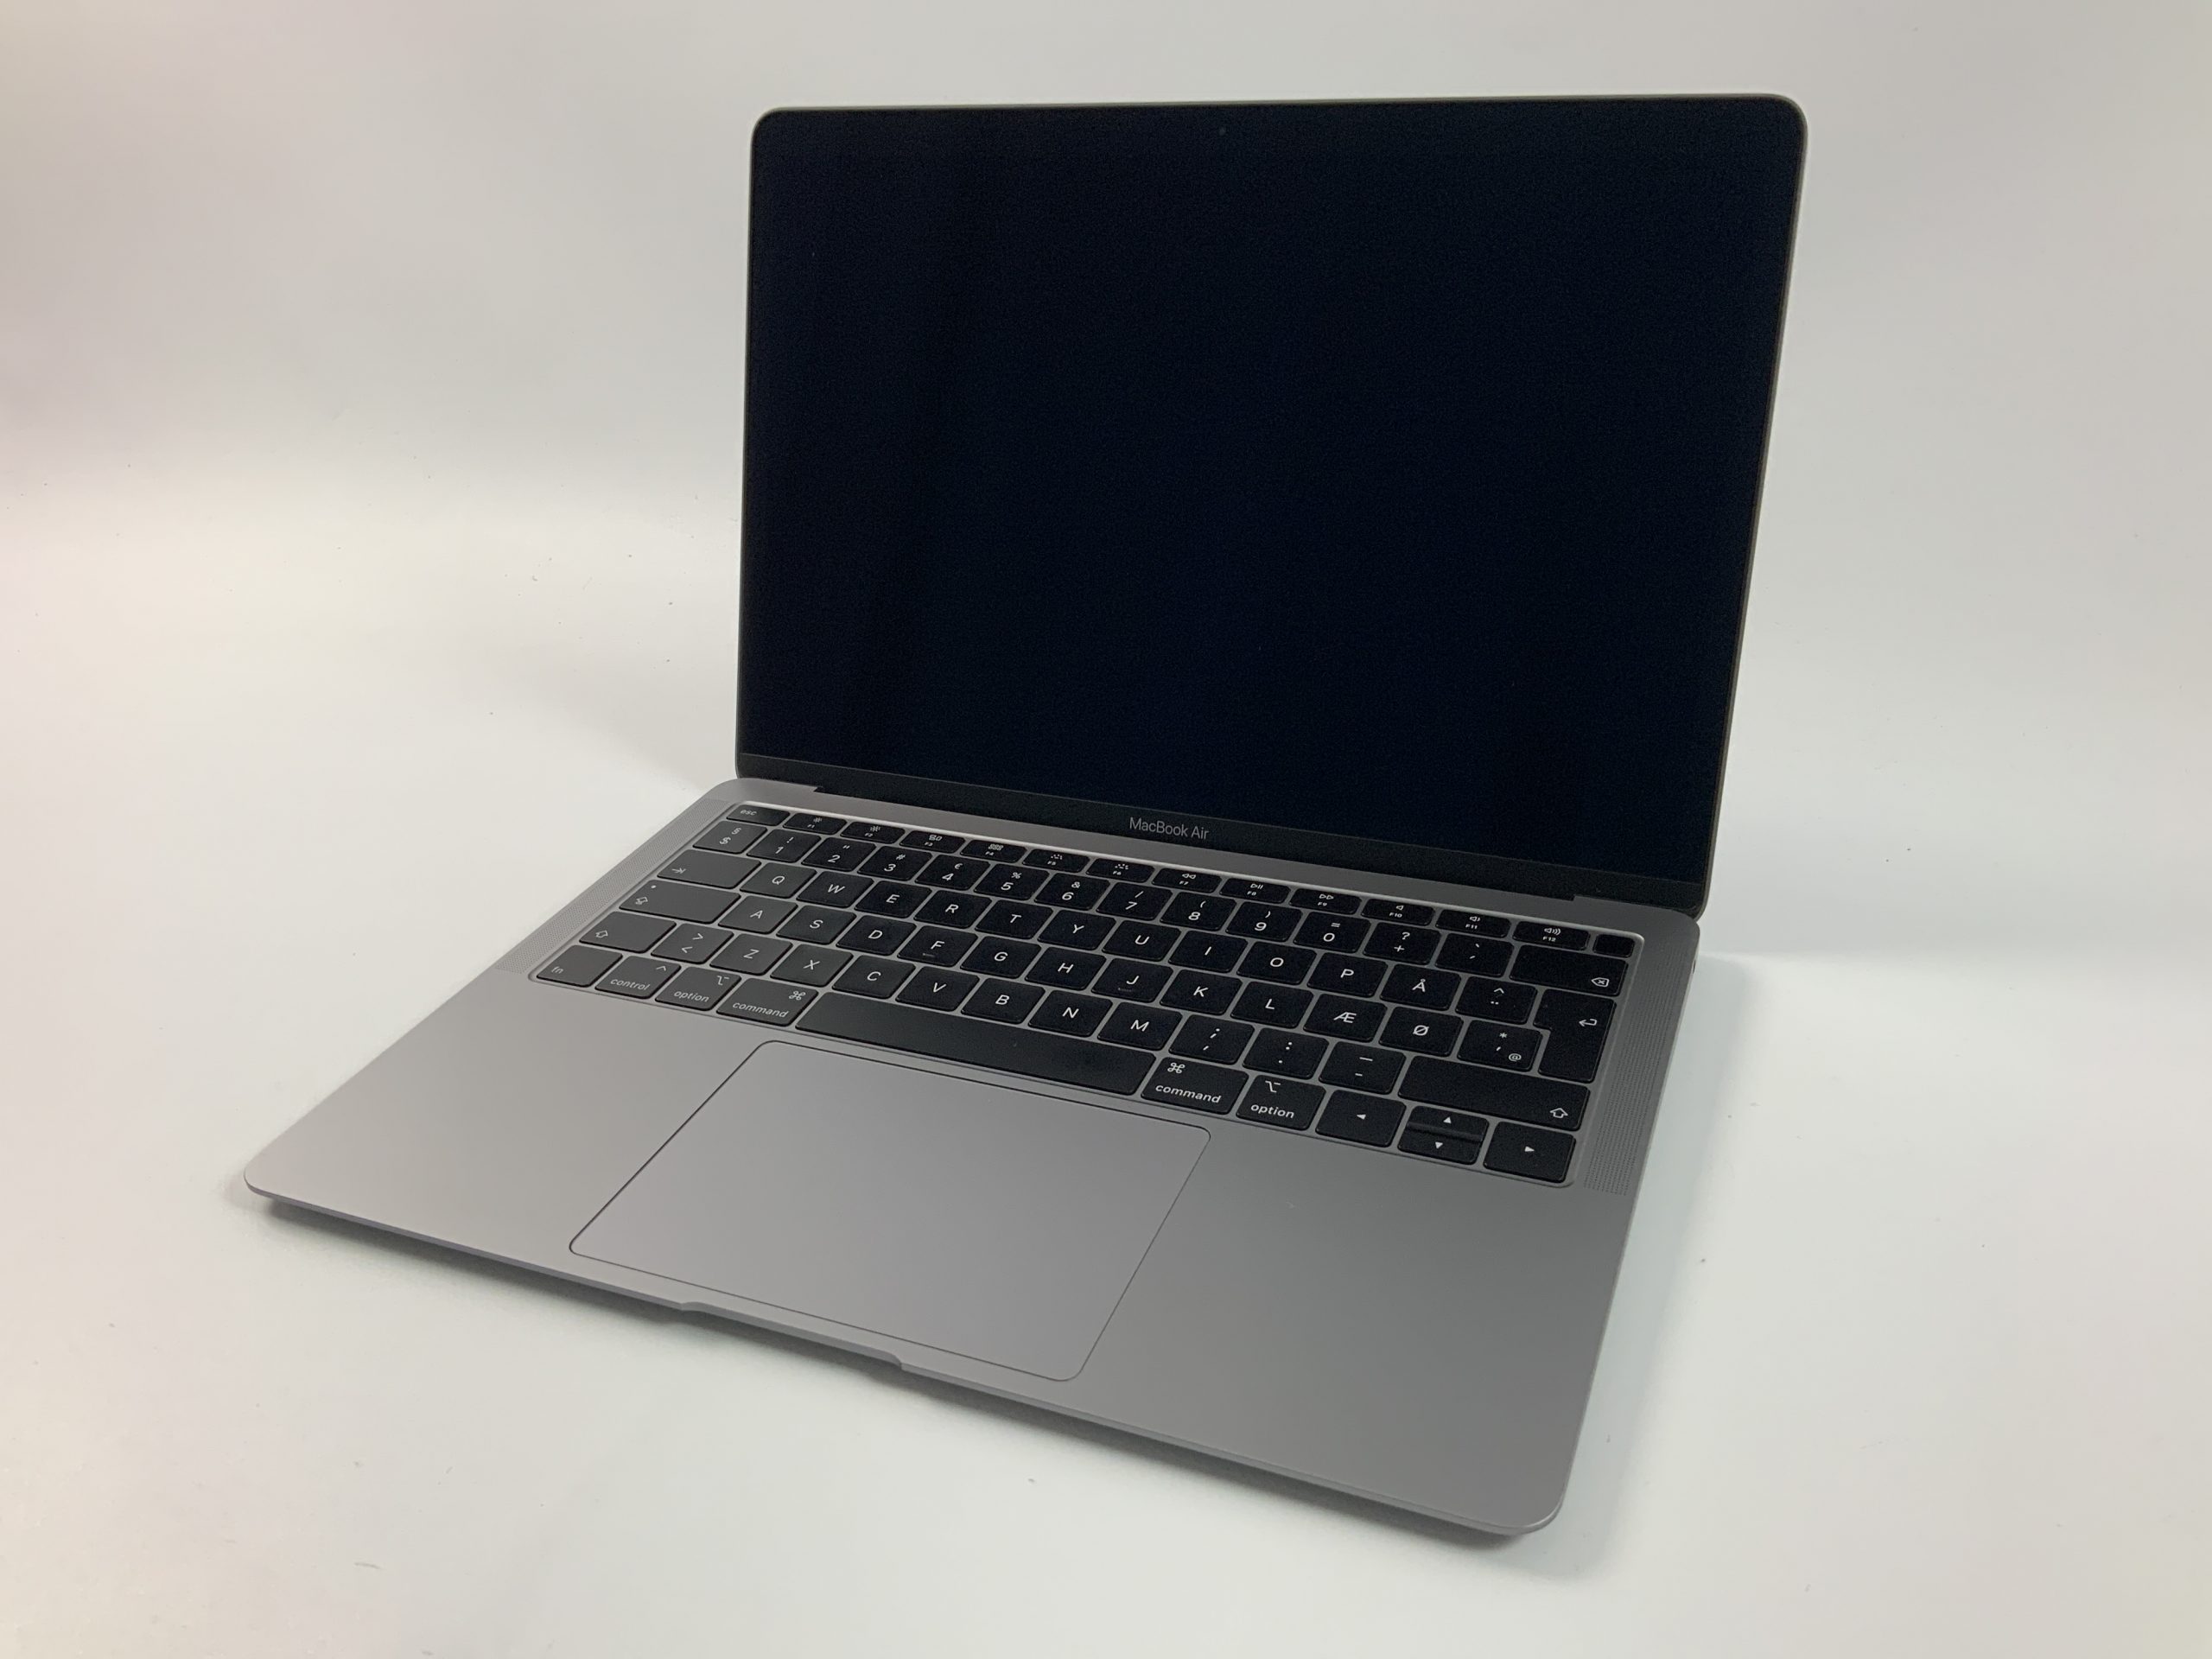 MacBook Air 13" Mid 2019 (Intel Core i5 1.6 GHz 8 GB RAM 128 GB SSD), Space Gray, Intel Core i5 1.6 GHz, 8 GB RAM, 128 GB SSD, obraz 1